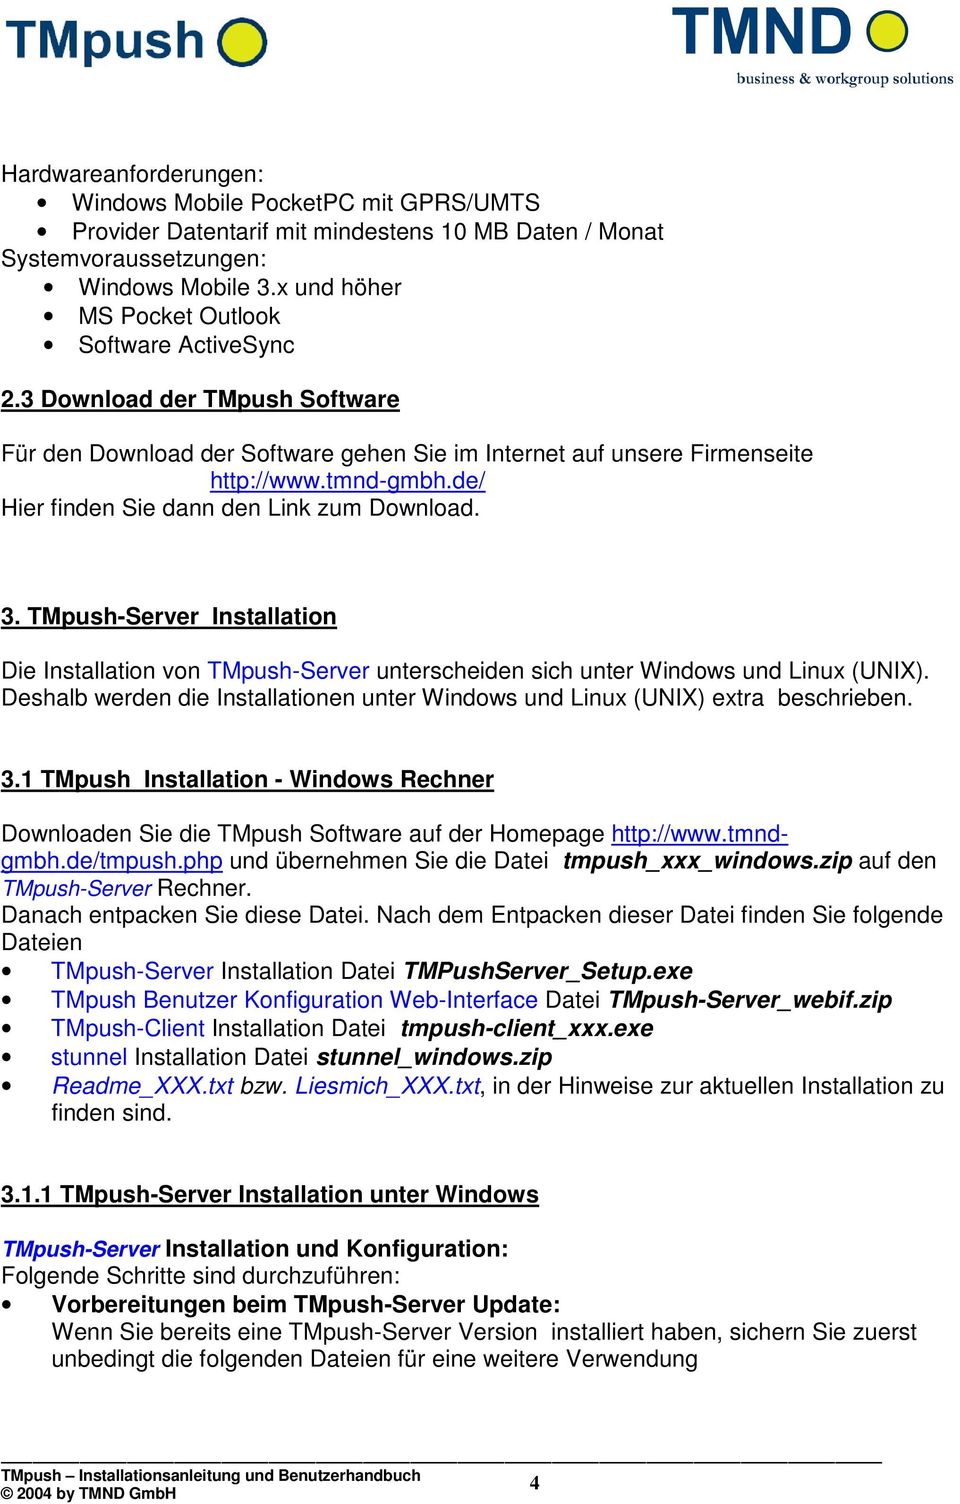 de/ Hier finden Sie dann den Link zum Download. 3. TMpush-Server Installation Die Installation von TMpush-Server unterscheiden sich unter Windows und Linux (UNIX).